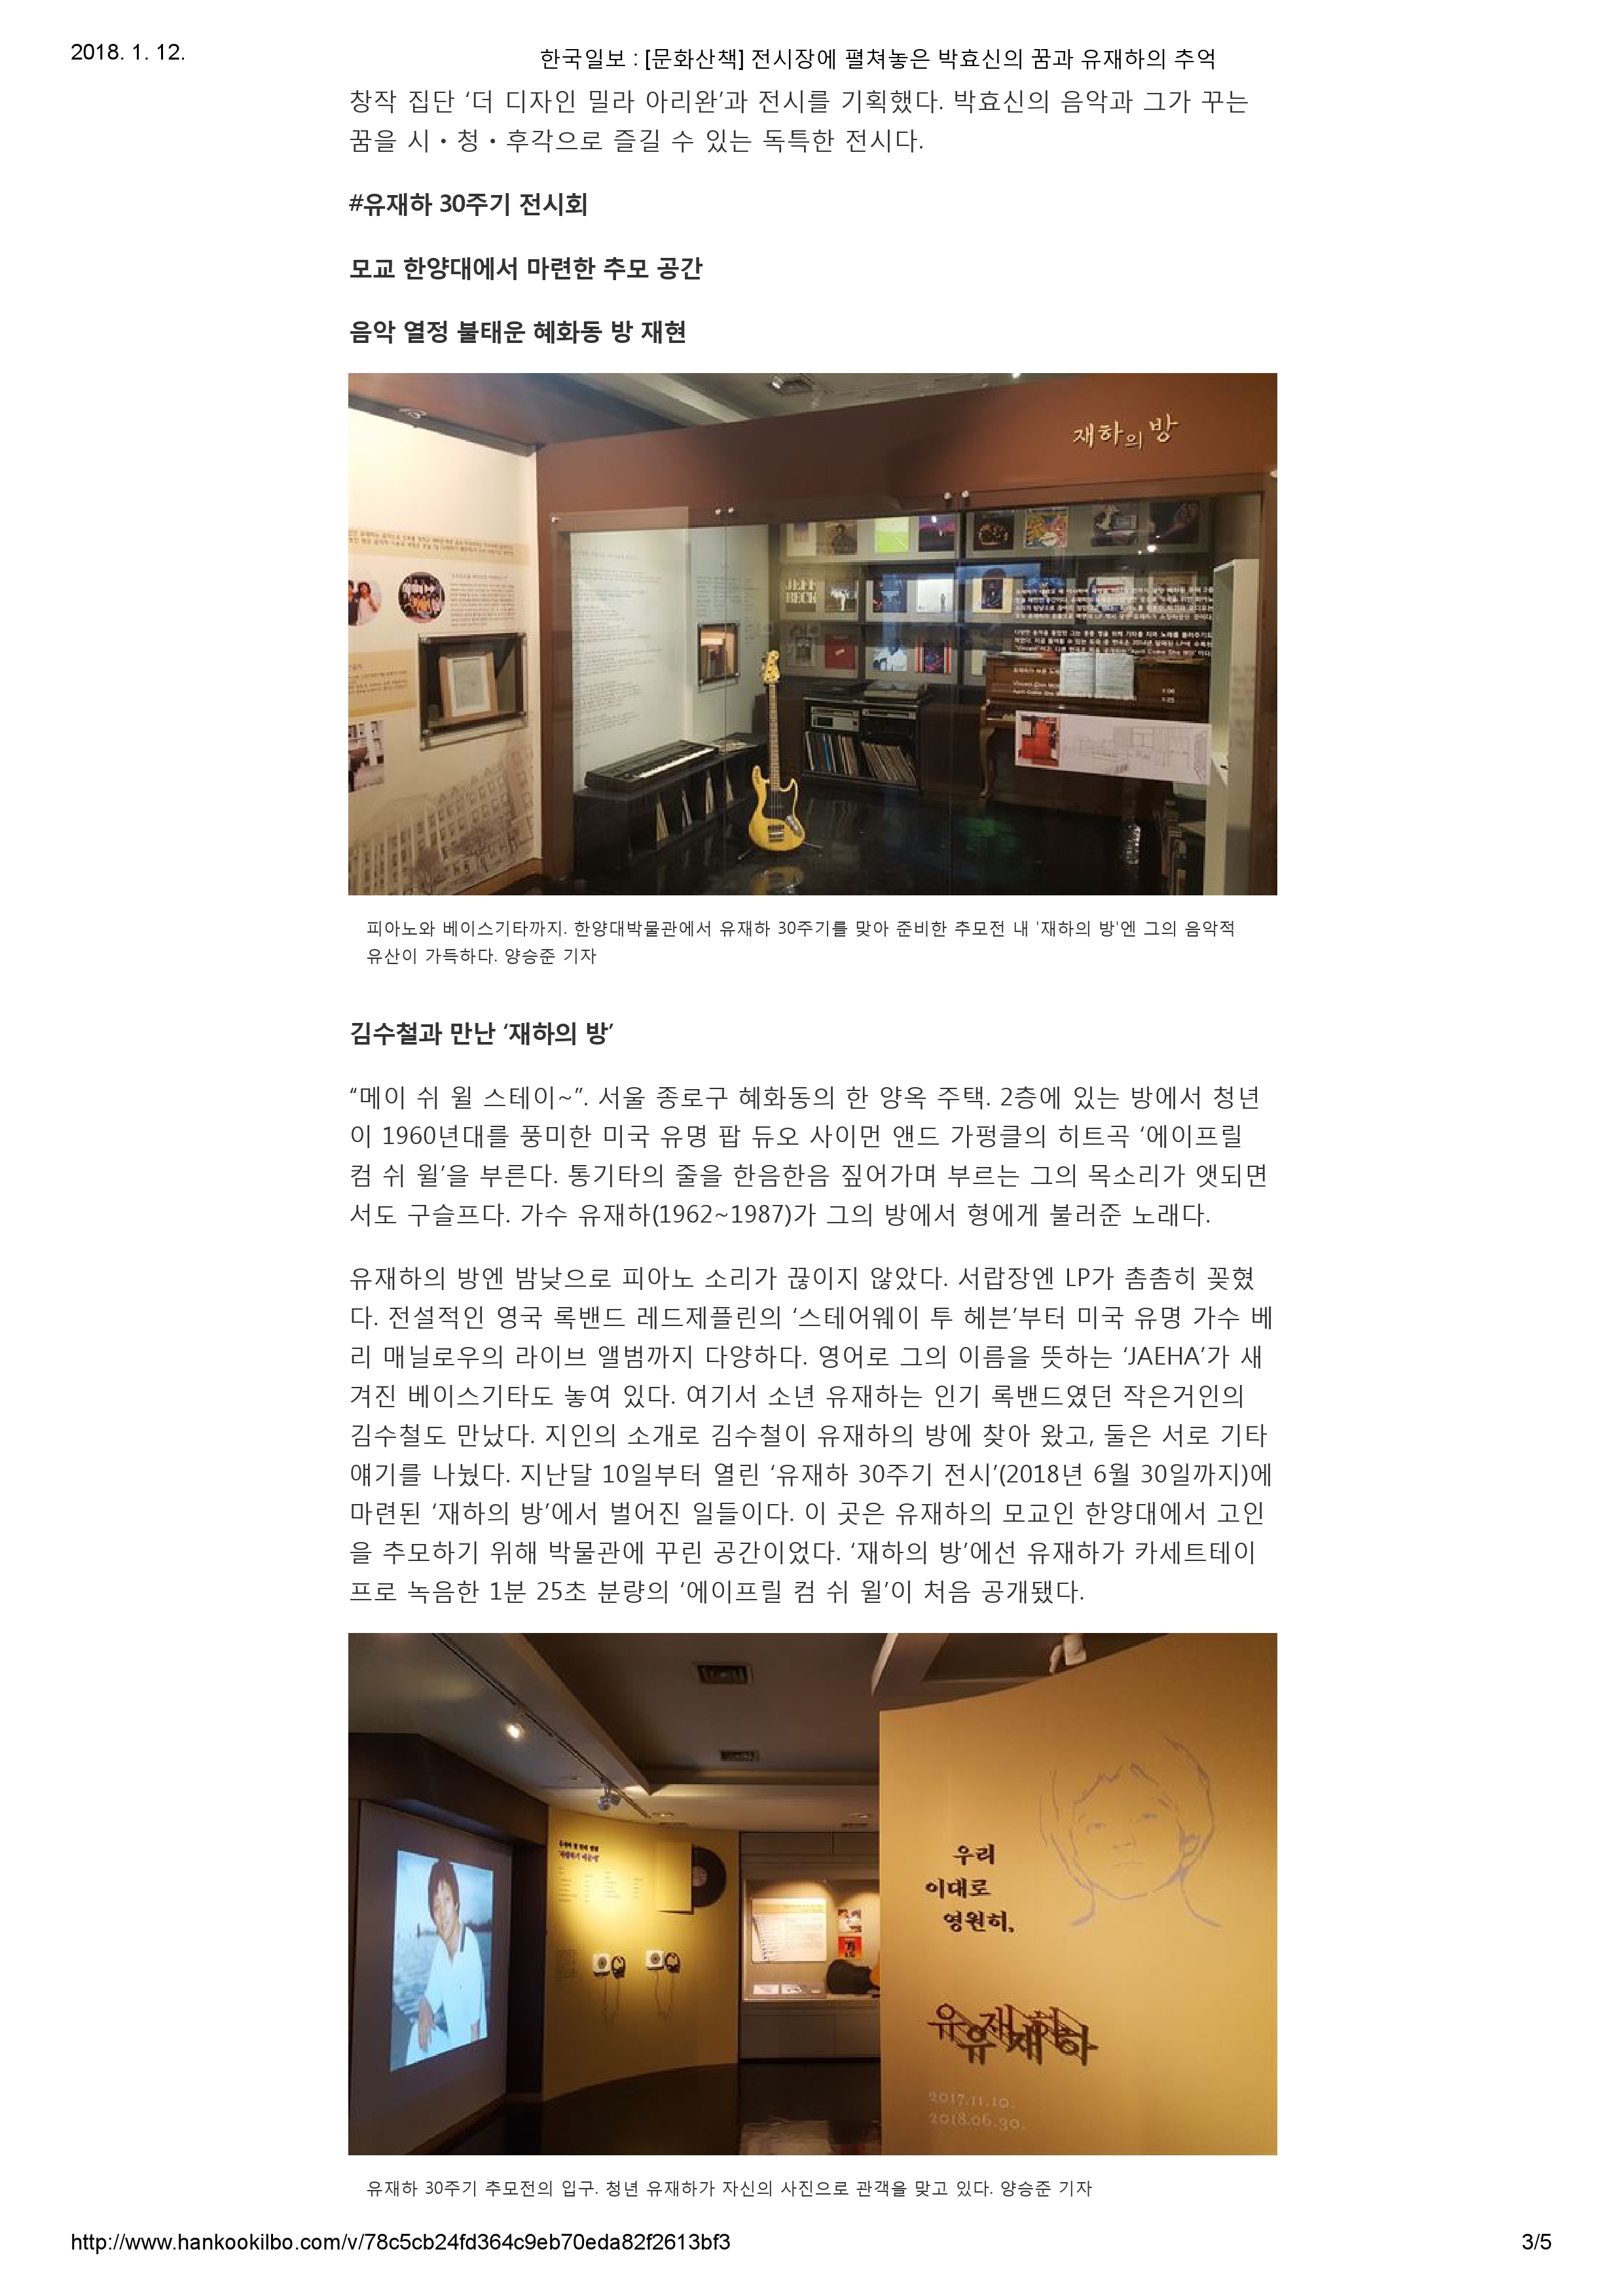 20171215_한국일보_[문화산책] 전시장에 펼쳐놓은 박효신의 꿈과 유재하의 추억-3.jpg